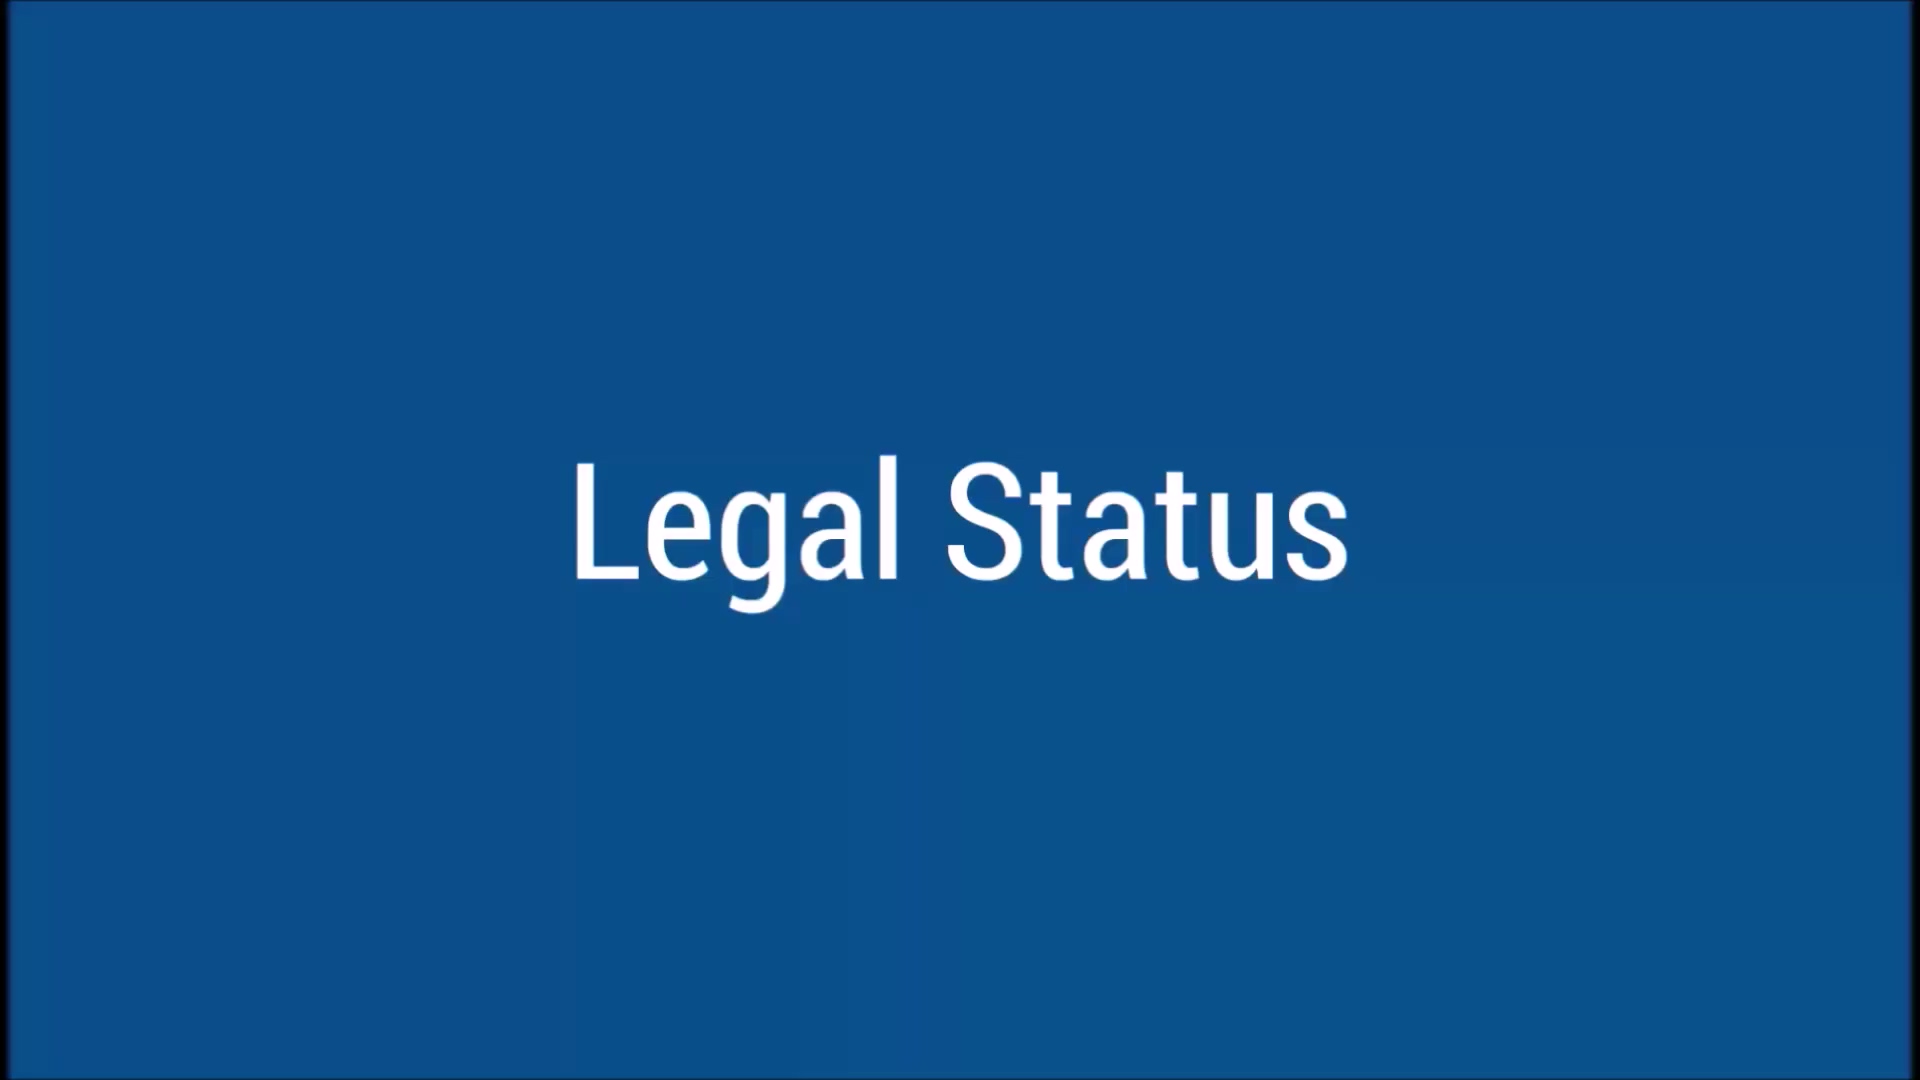 LegalStatus_FINAL2_SoundEdited